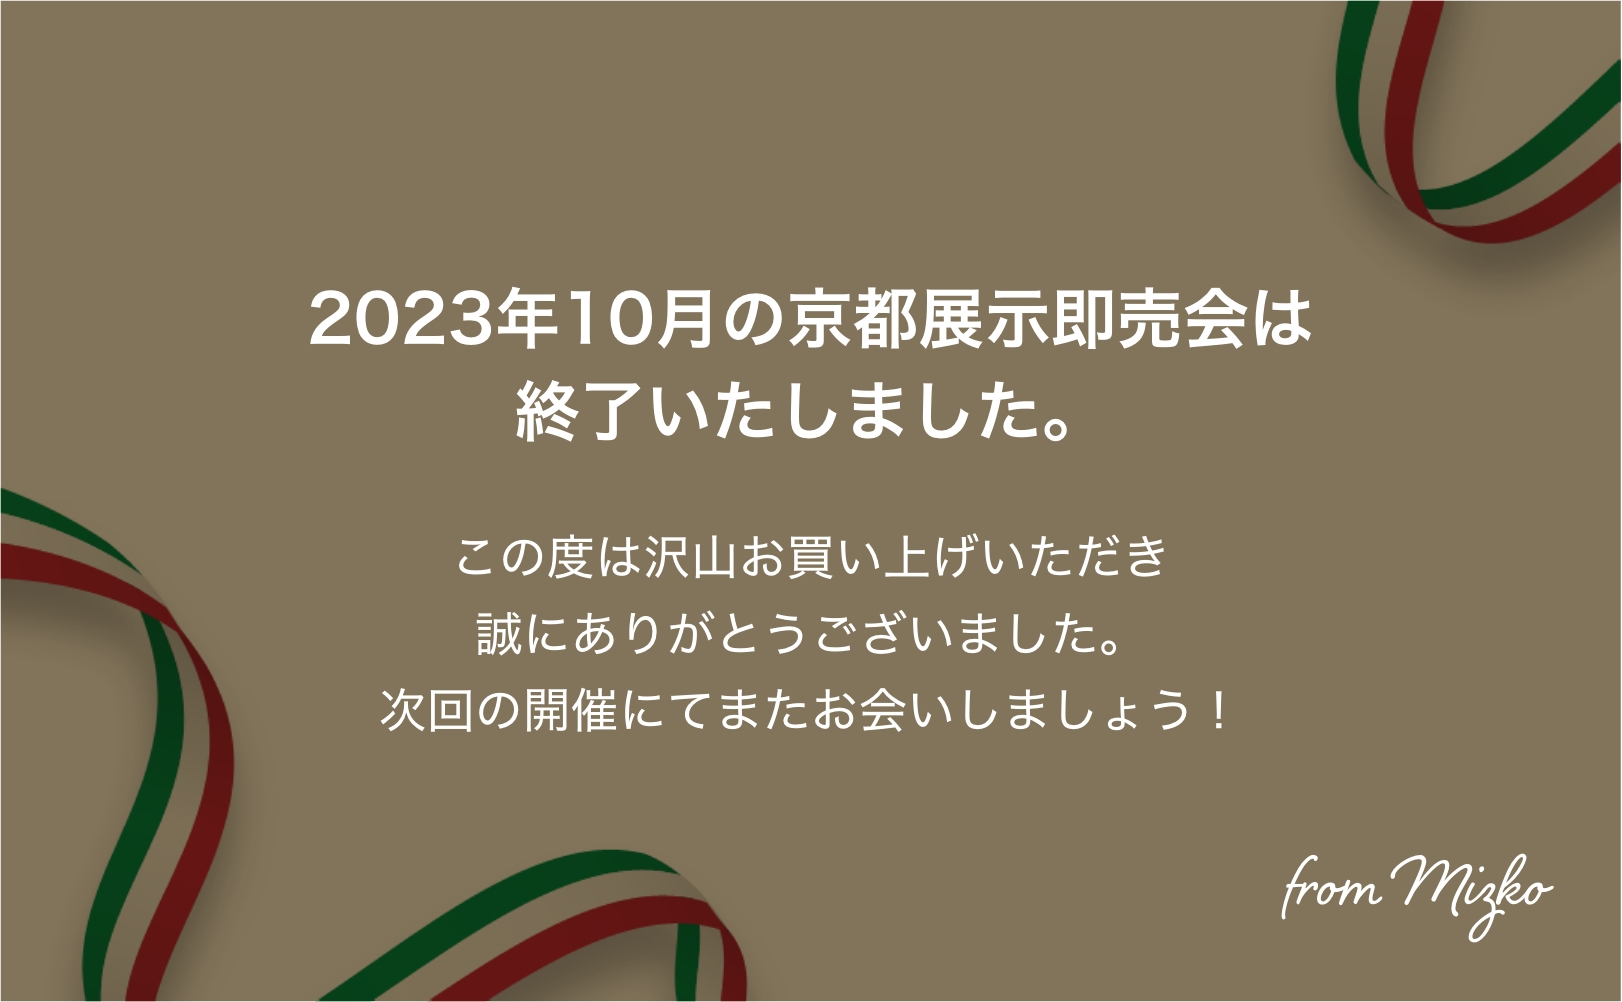 2023年10月の京都展示即売会は終了いたしました。この度は沢山お買い上げいただき誠にありがとうございました。次回の開催にてまたお会いしましょう！